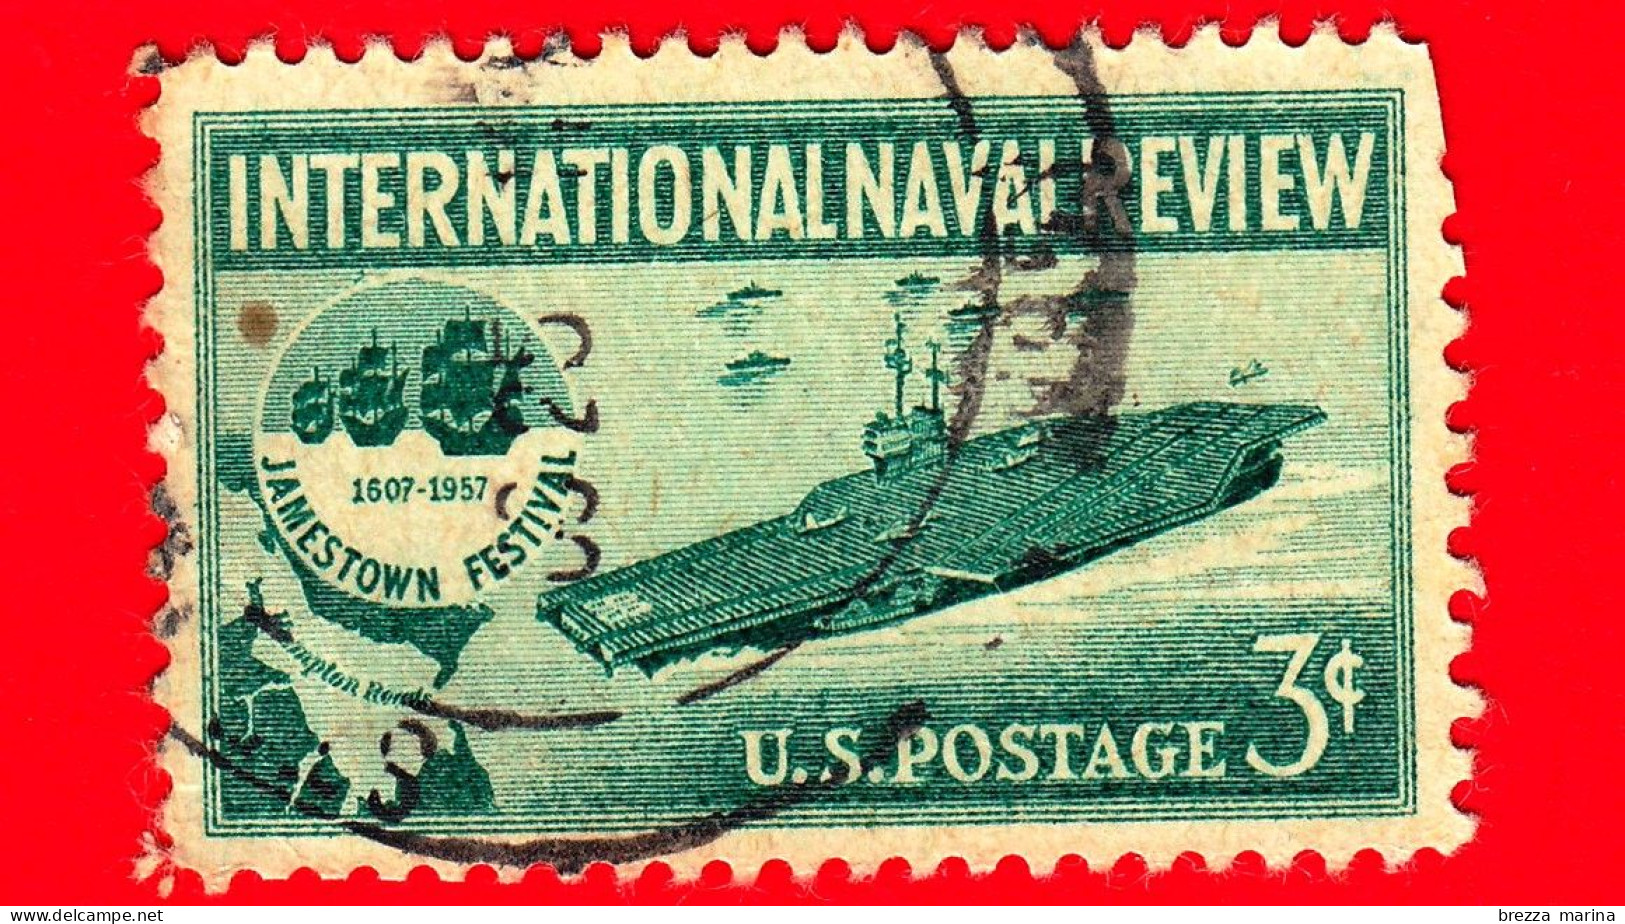 USA - STATI UNITI - Usato - 1957 - Rassegna Navale Internazionale - Portaerei Ed Emblema Del Jamestown Festival - 3 - Usati